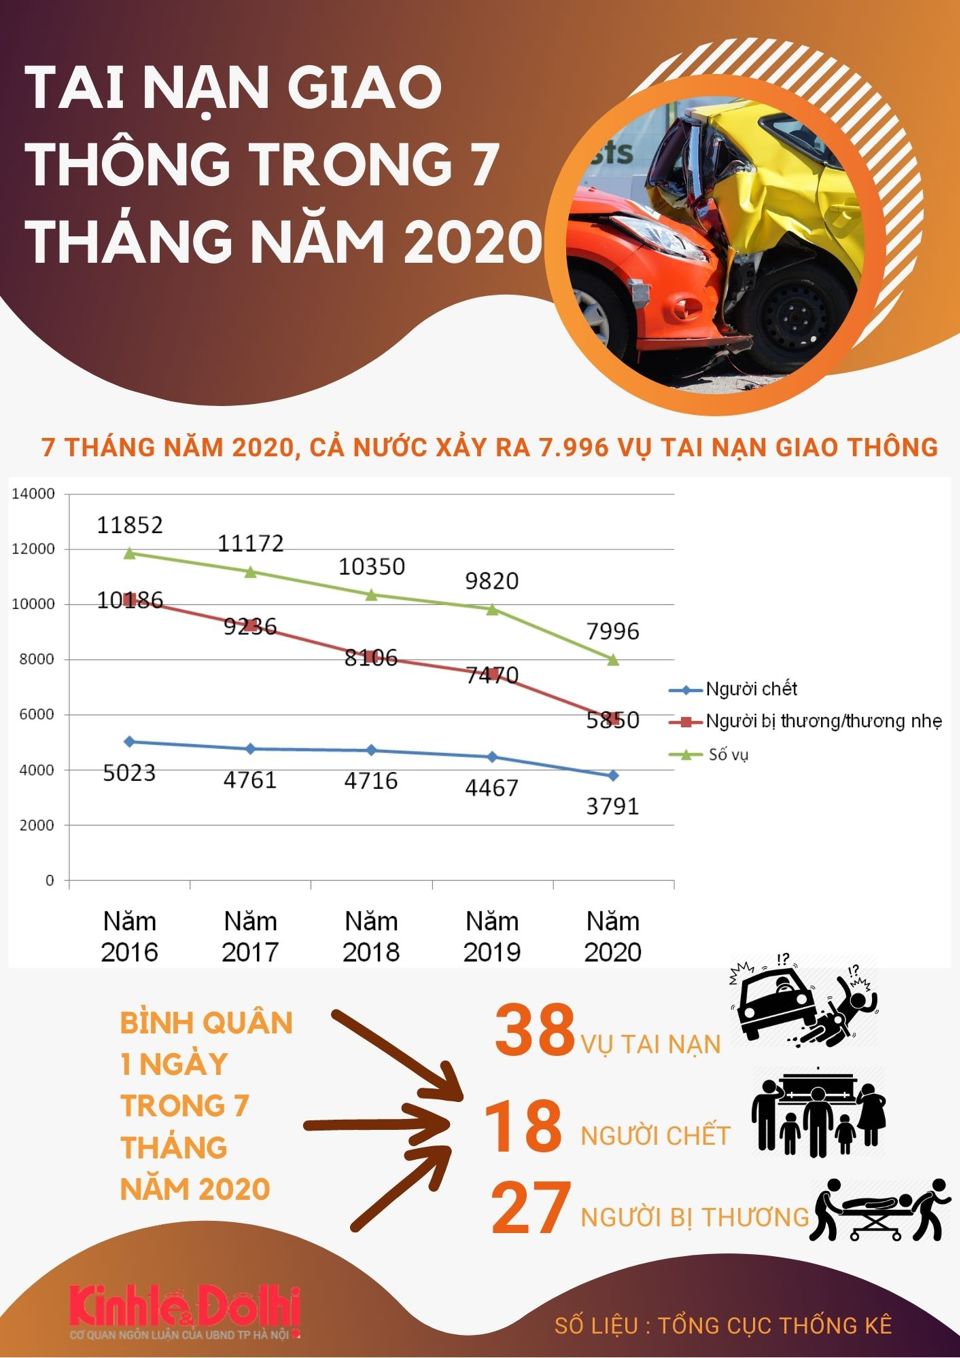 [Infographic] Số liệu tình hình tai nạn giao thông trong 7 tháng năm 2020 - Ảnh 1